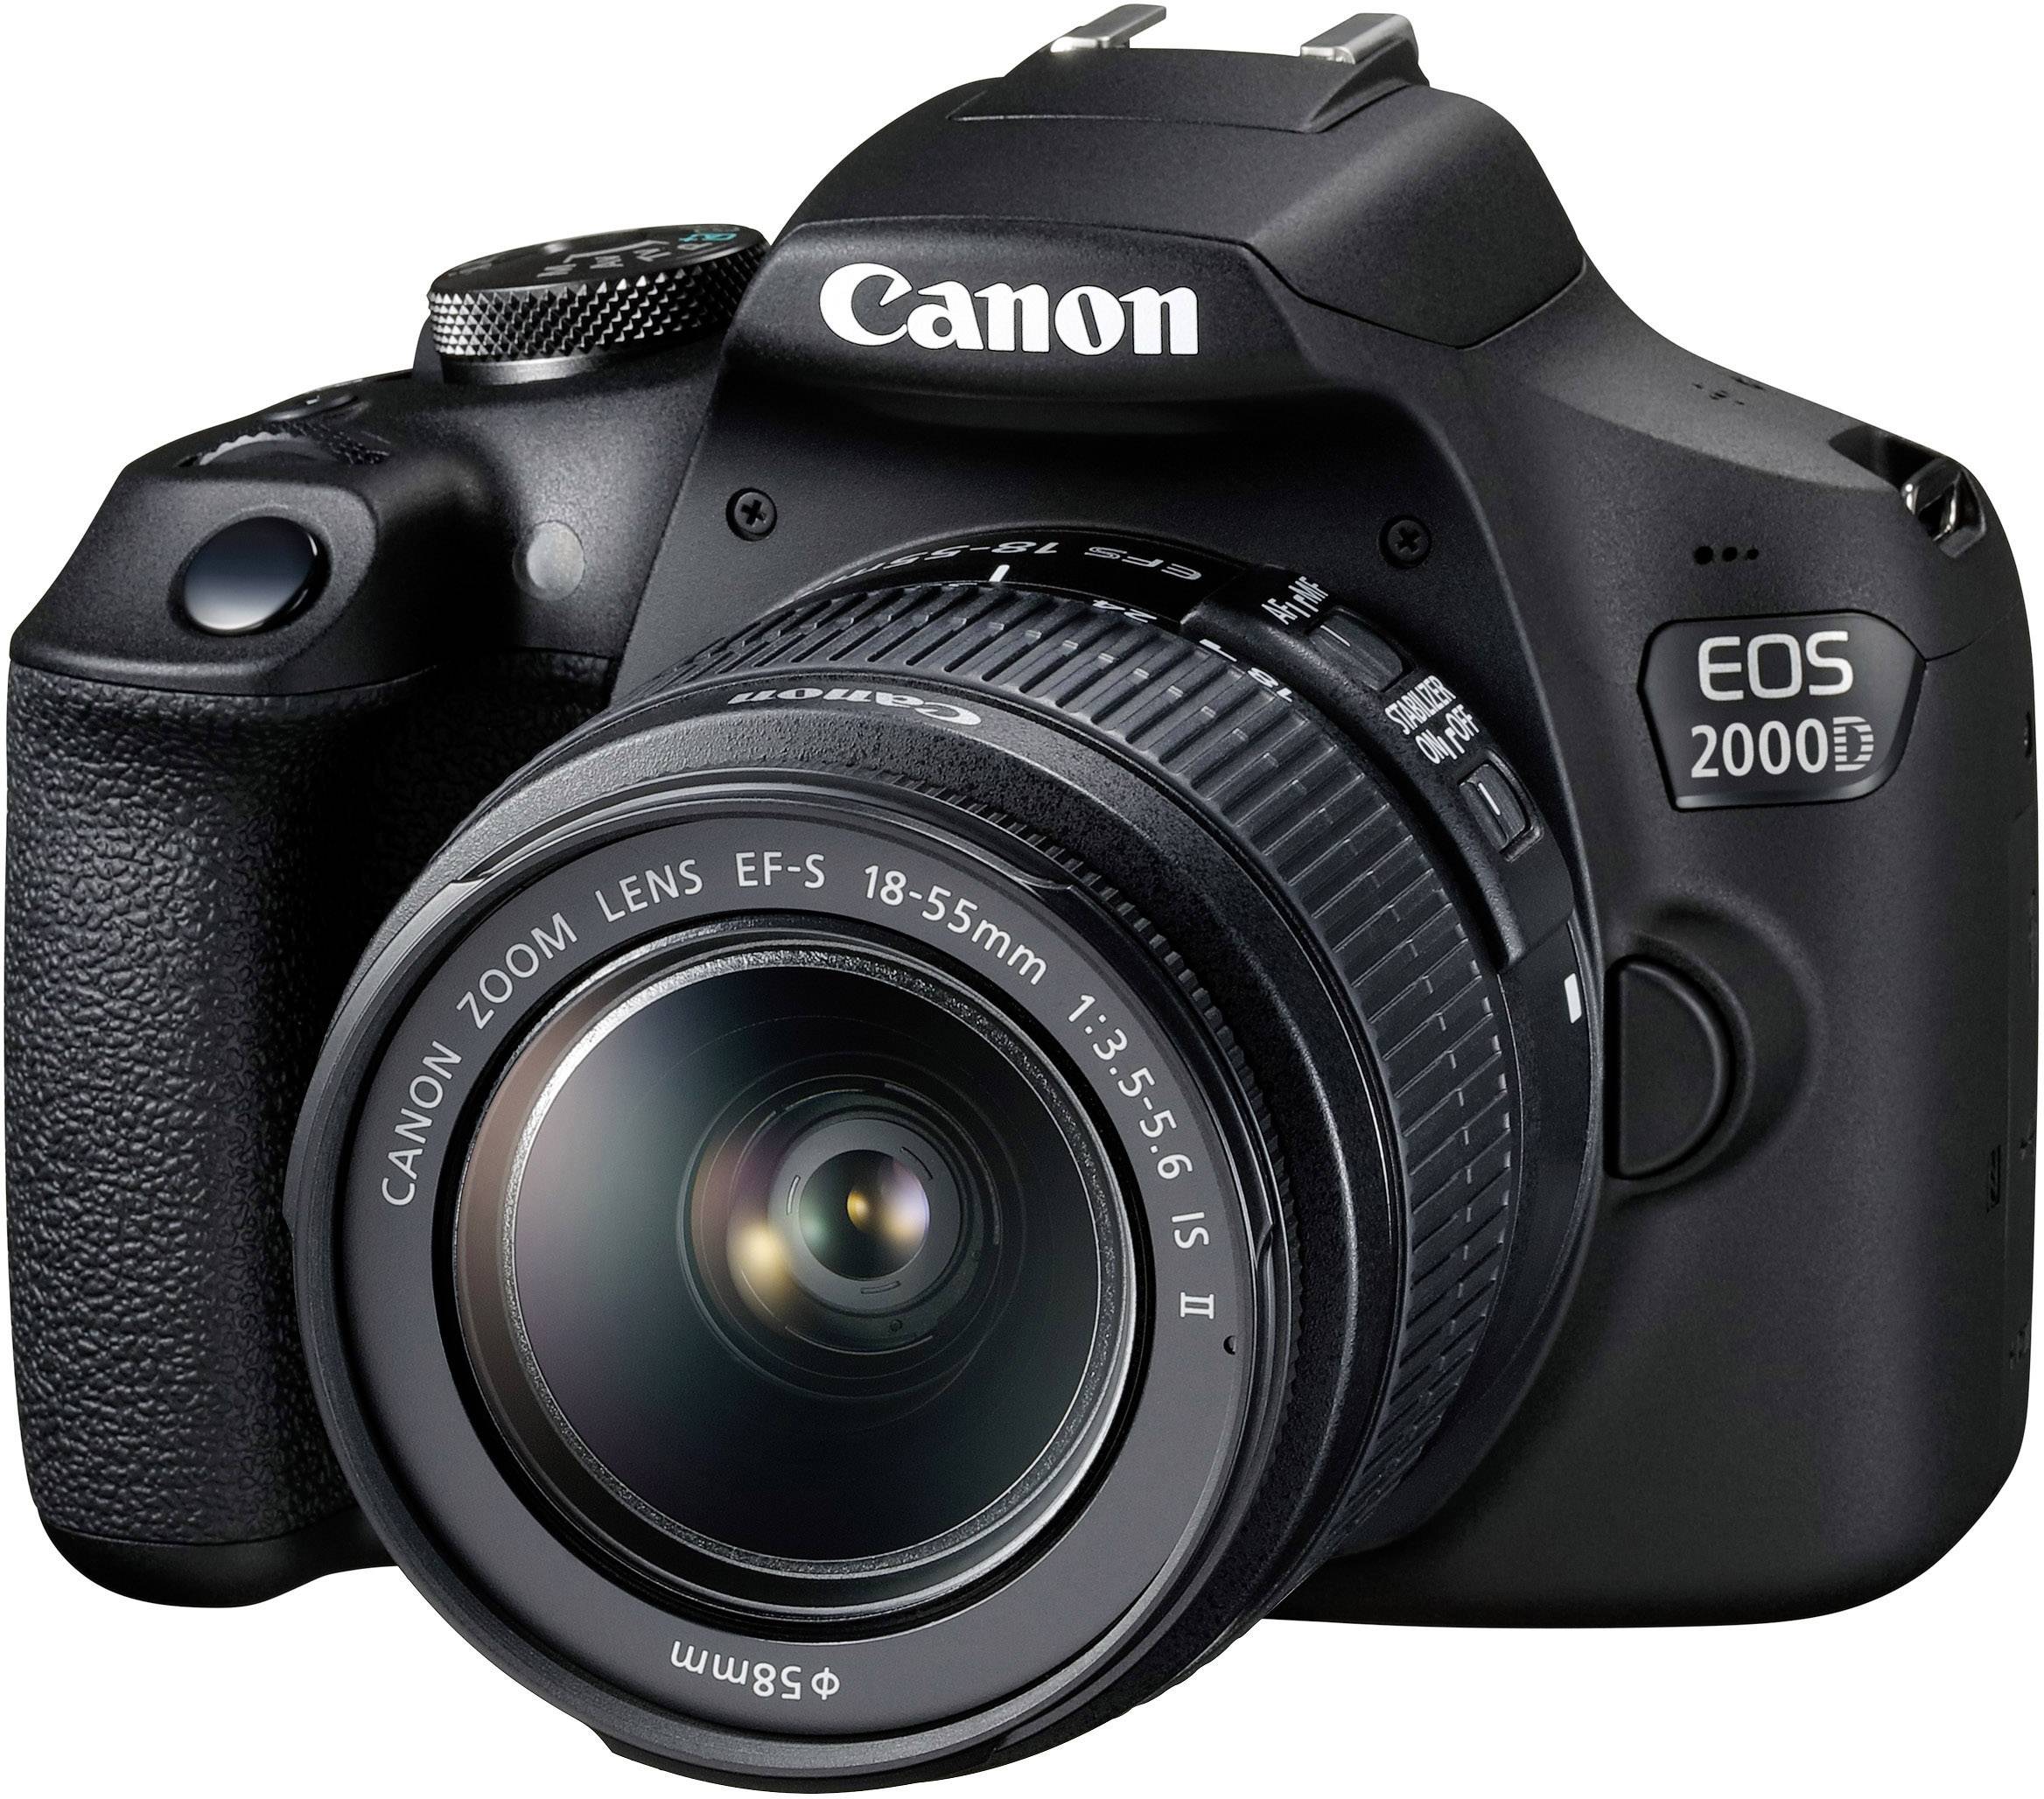 Surveillance Cameras - Canon Europe